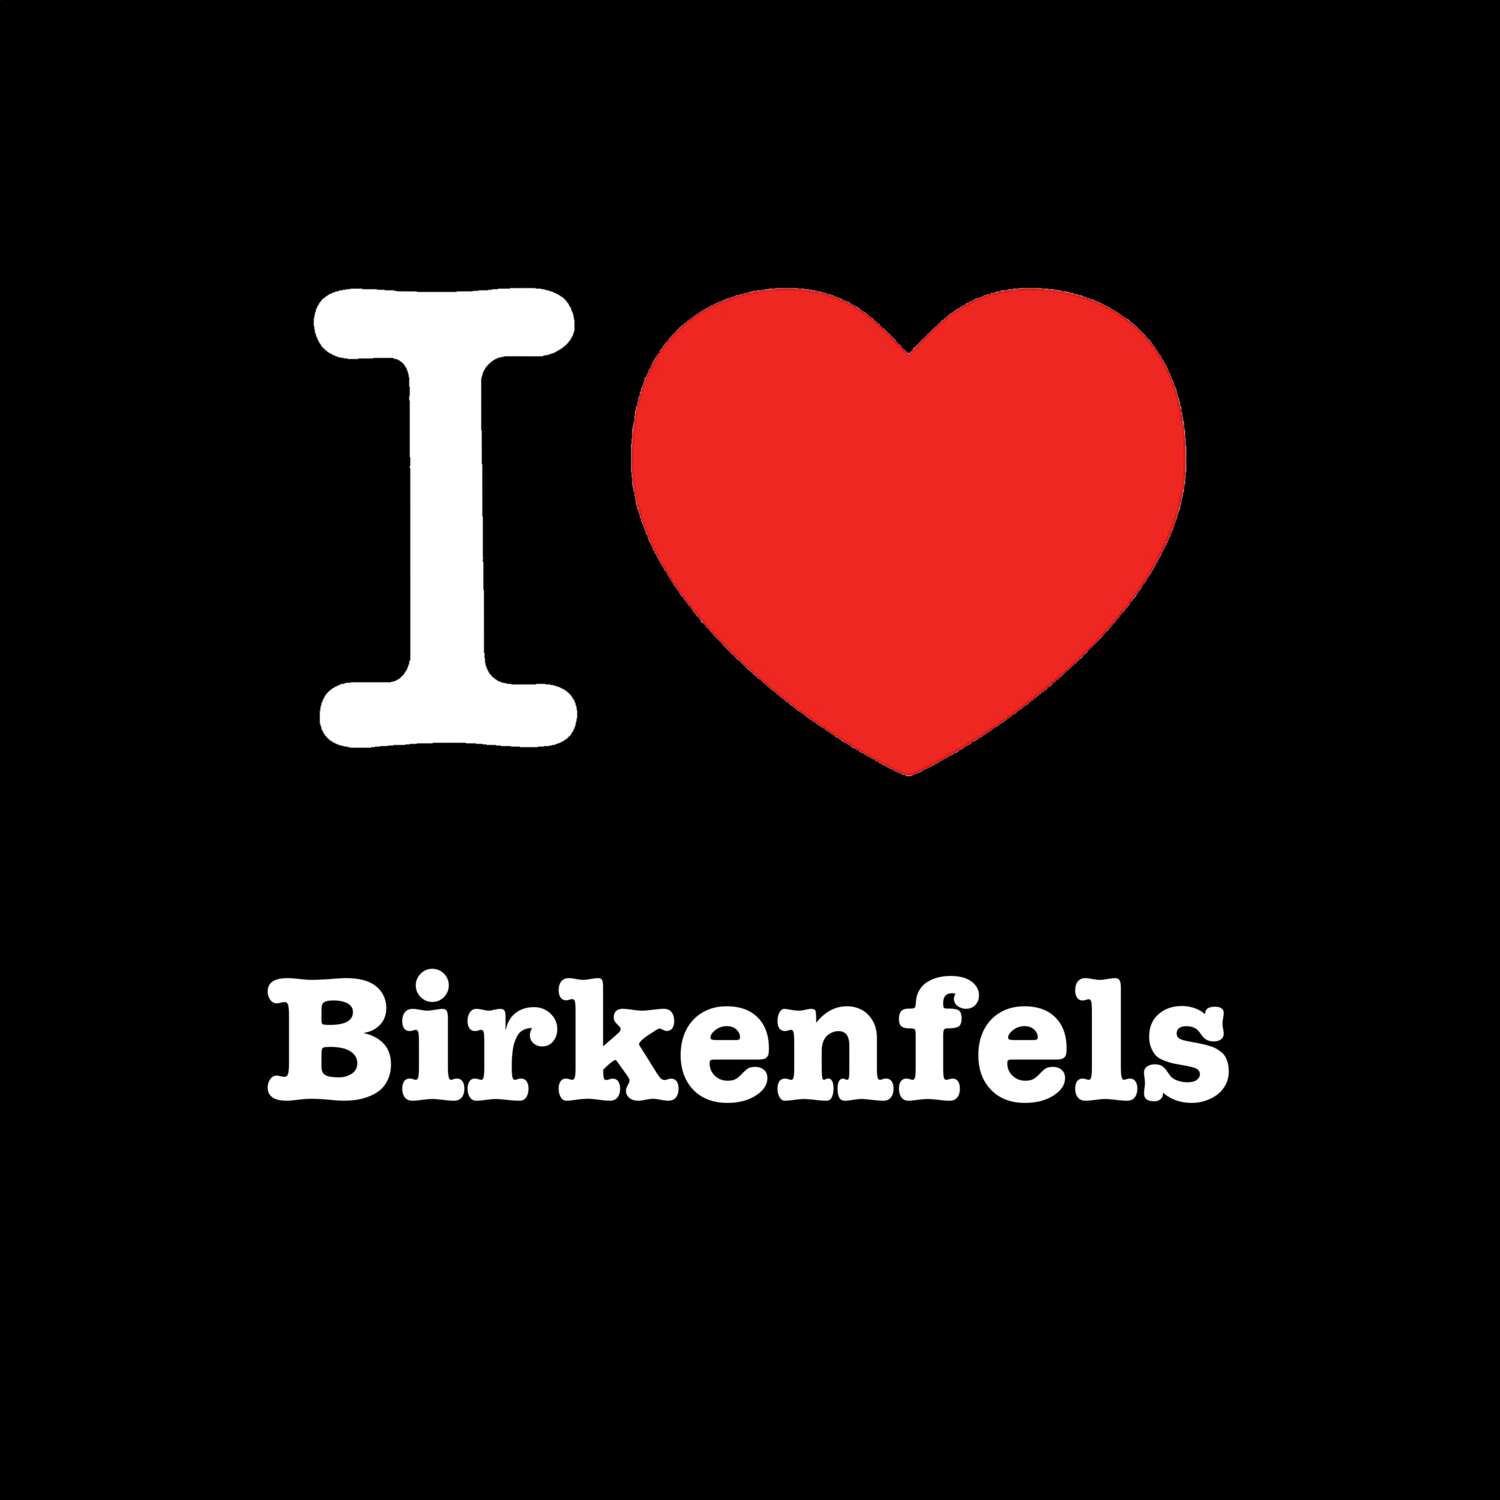 Birkenfels T-Shirt »I love«